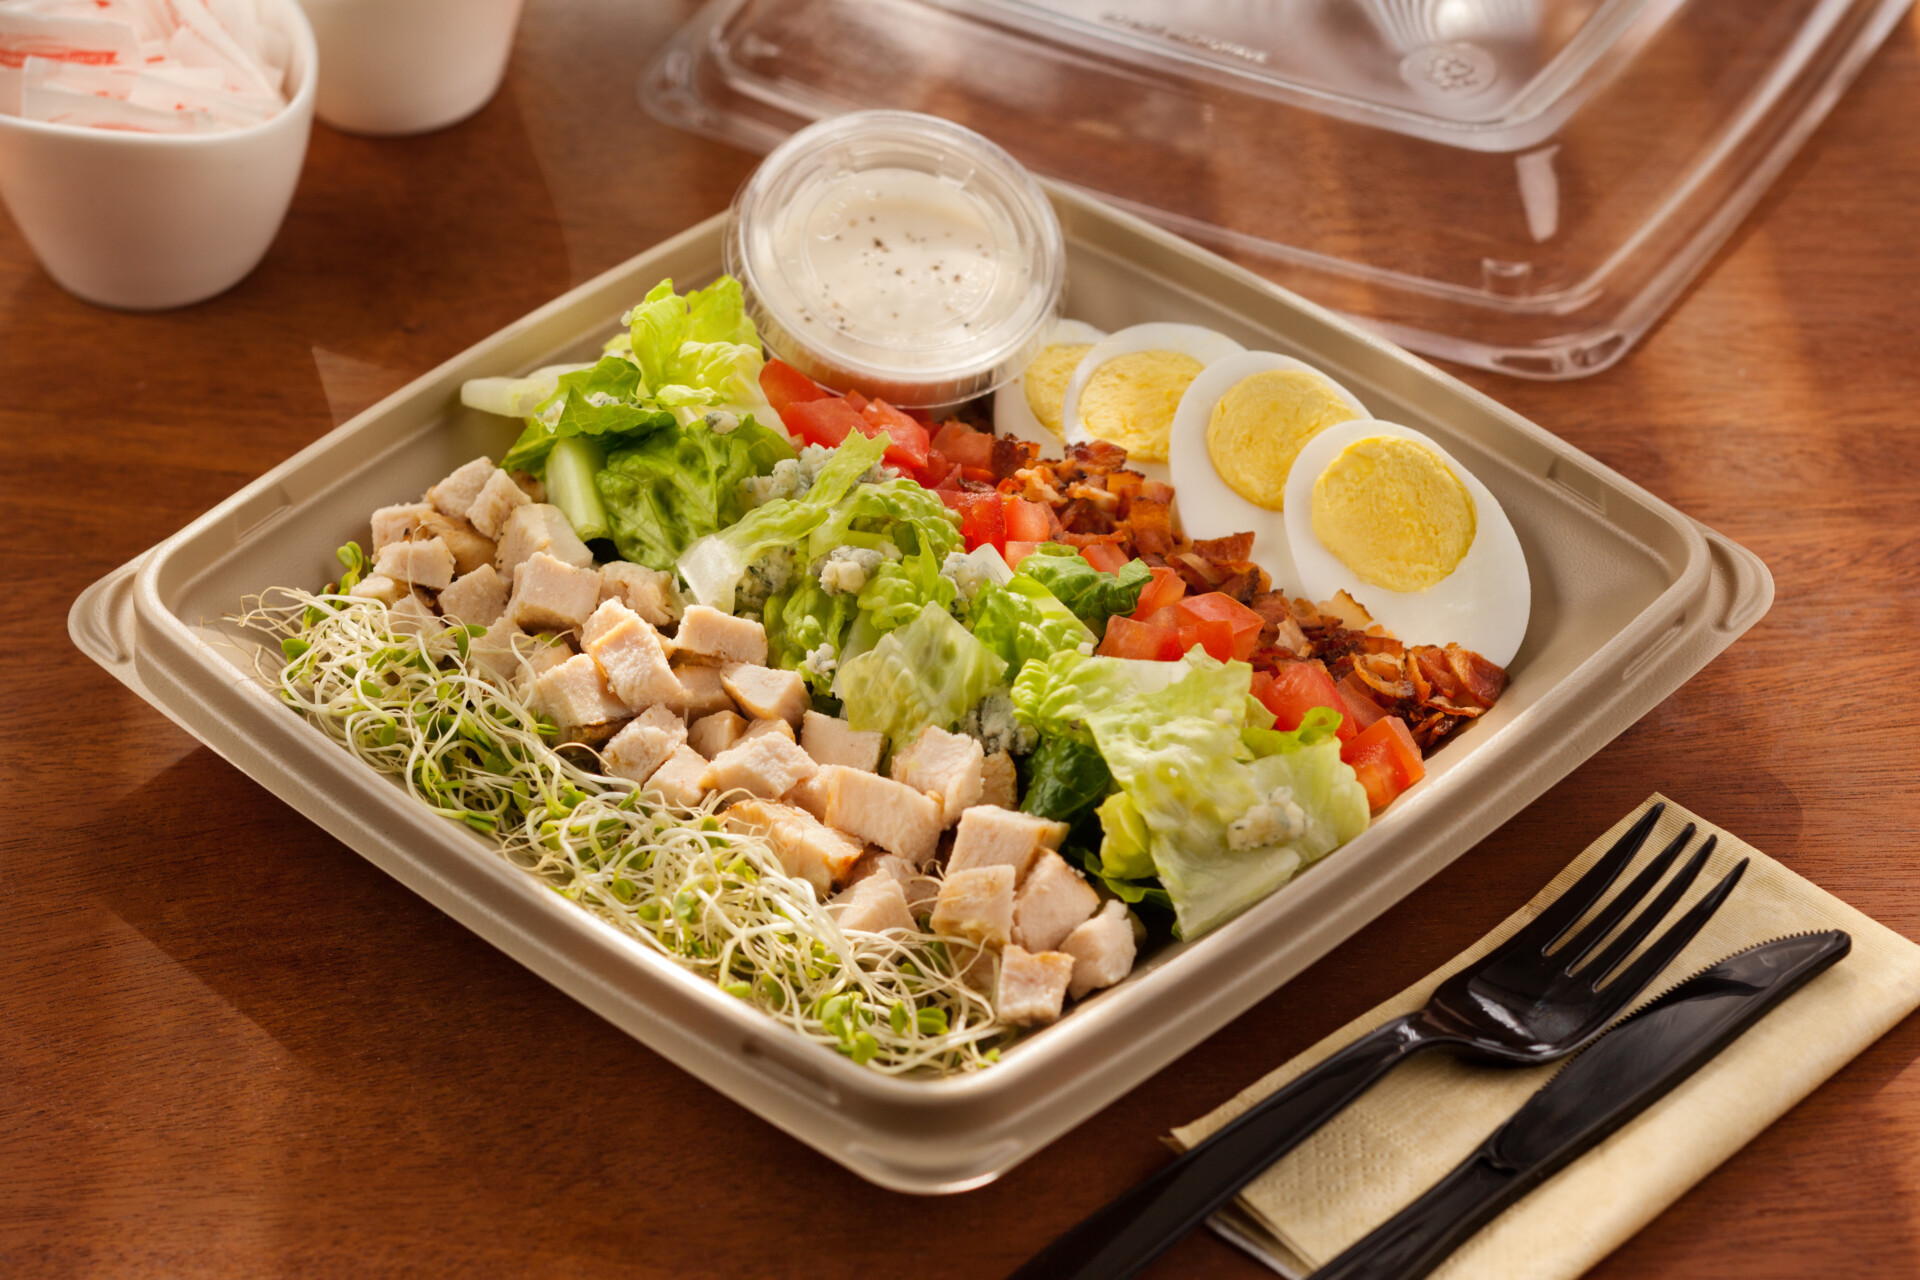 chicken pieces in a cob salad